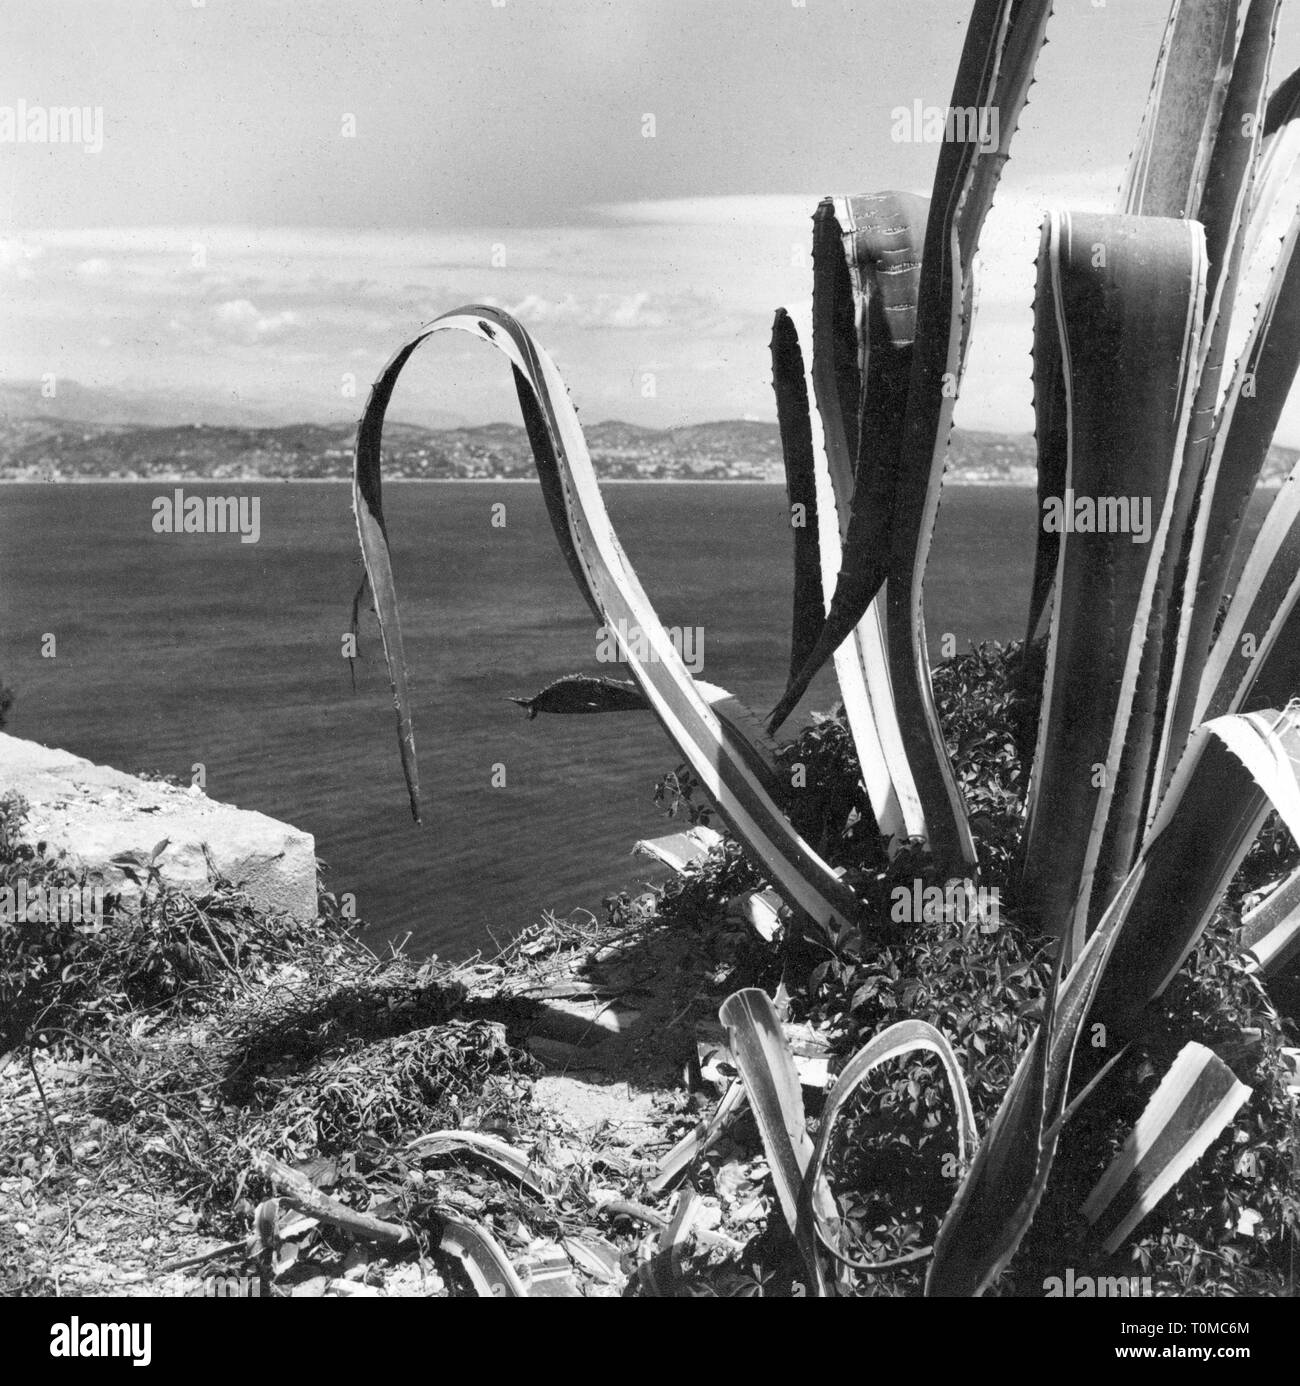 Geographie/reisen, Frankreich, Küste, Cote d'Azur, die Bucht von Cannes, im Vordergrund eine Agave, 1953, Additional-Rights - Clearance-Info - Not-Available Stockfoto